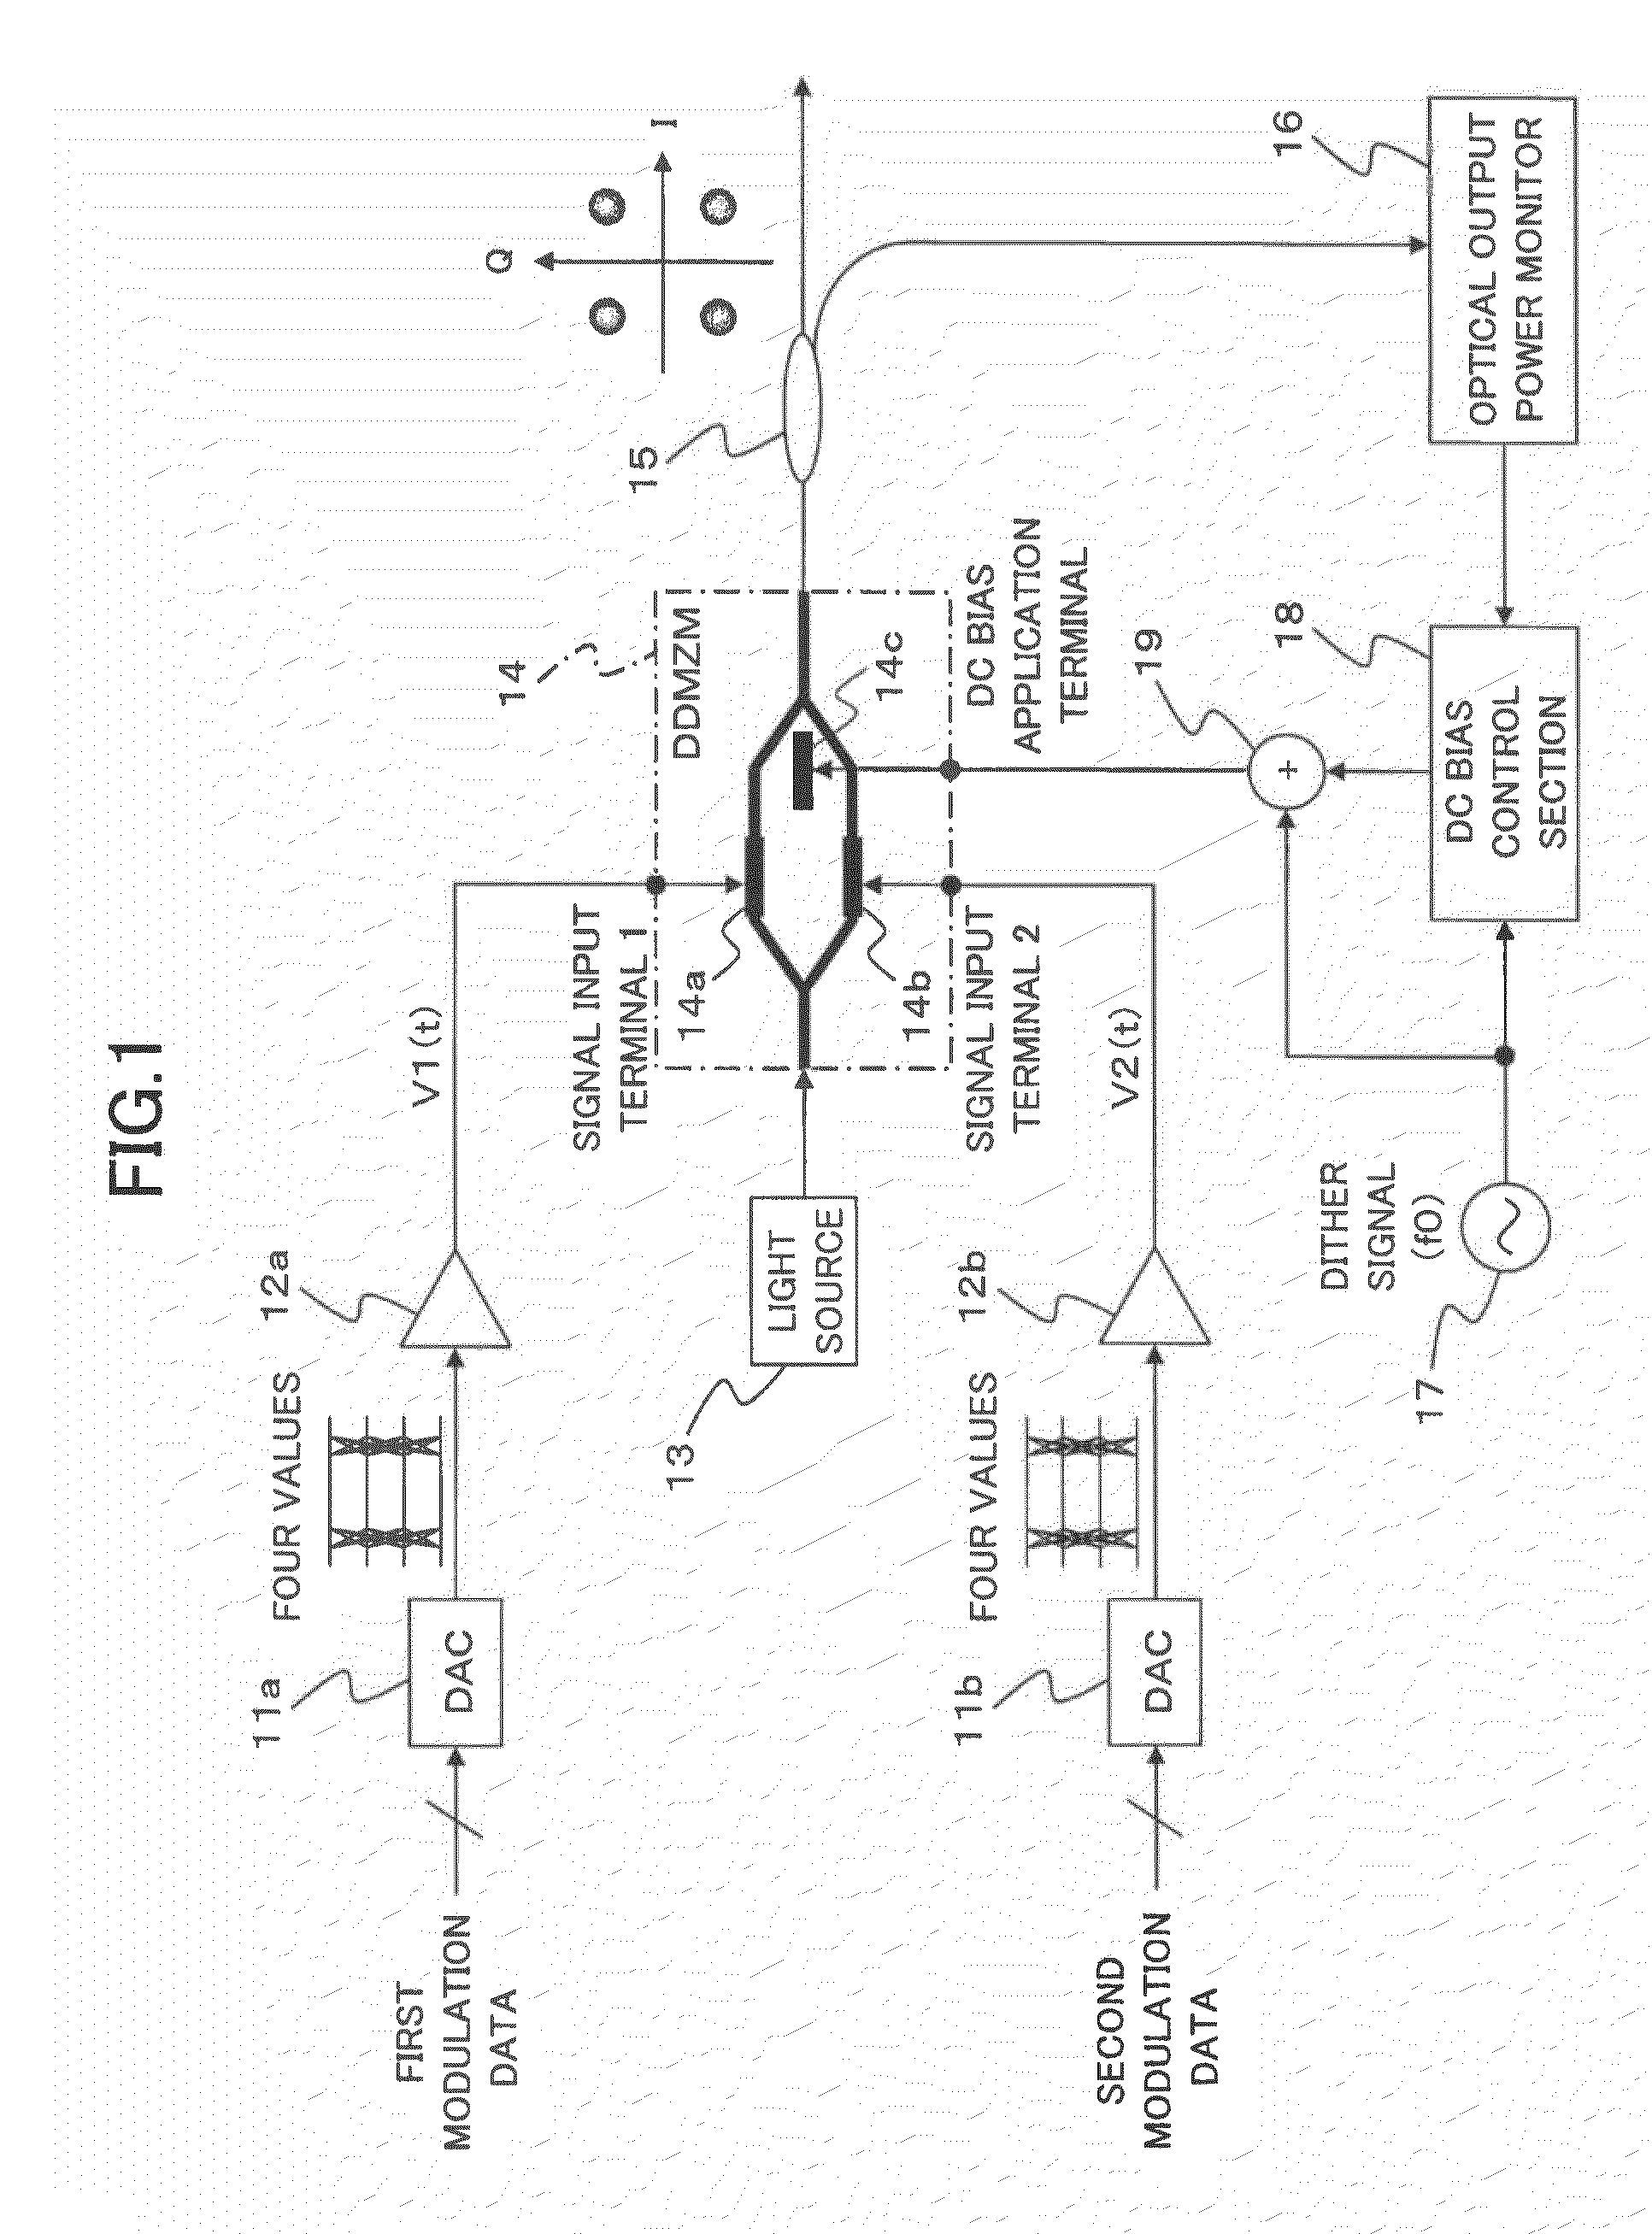 Multi-value optical transmitter